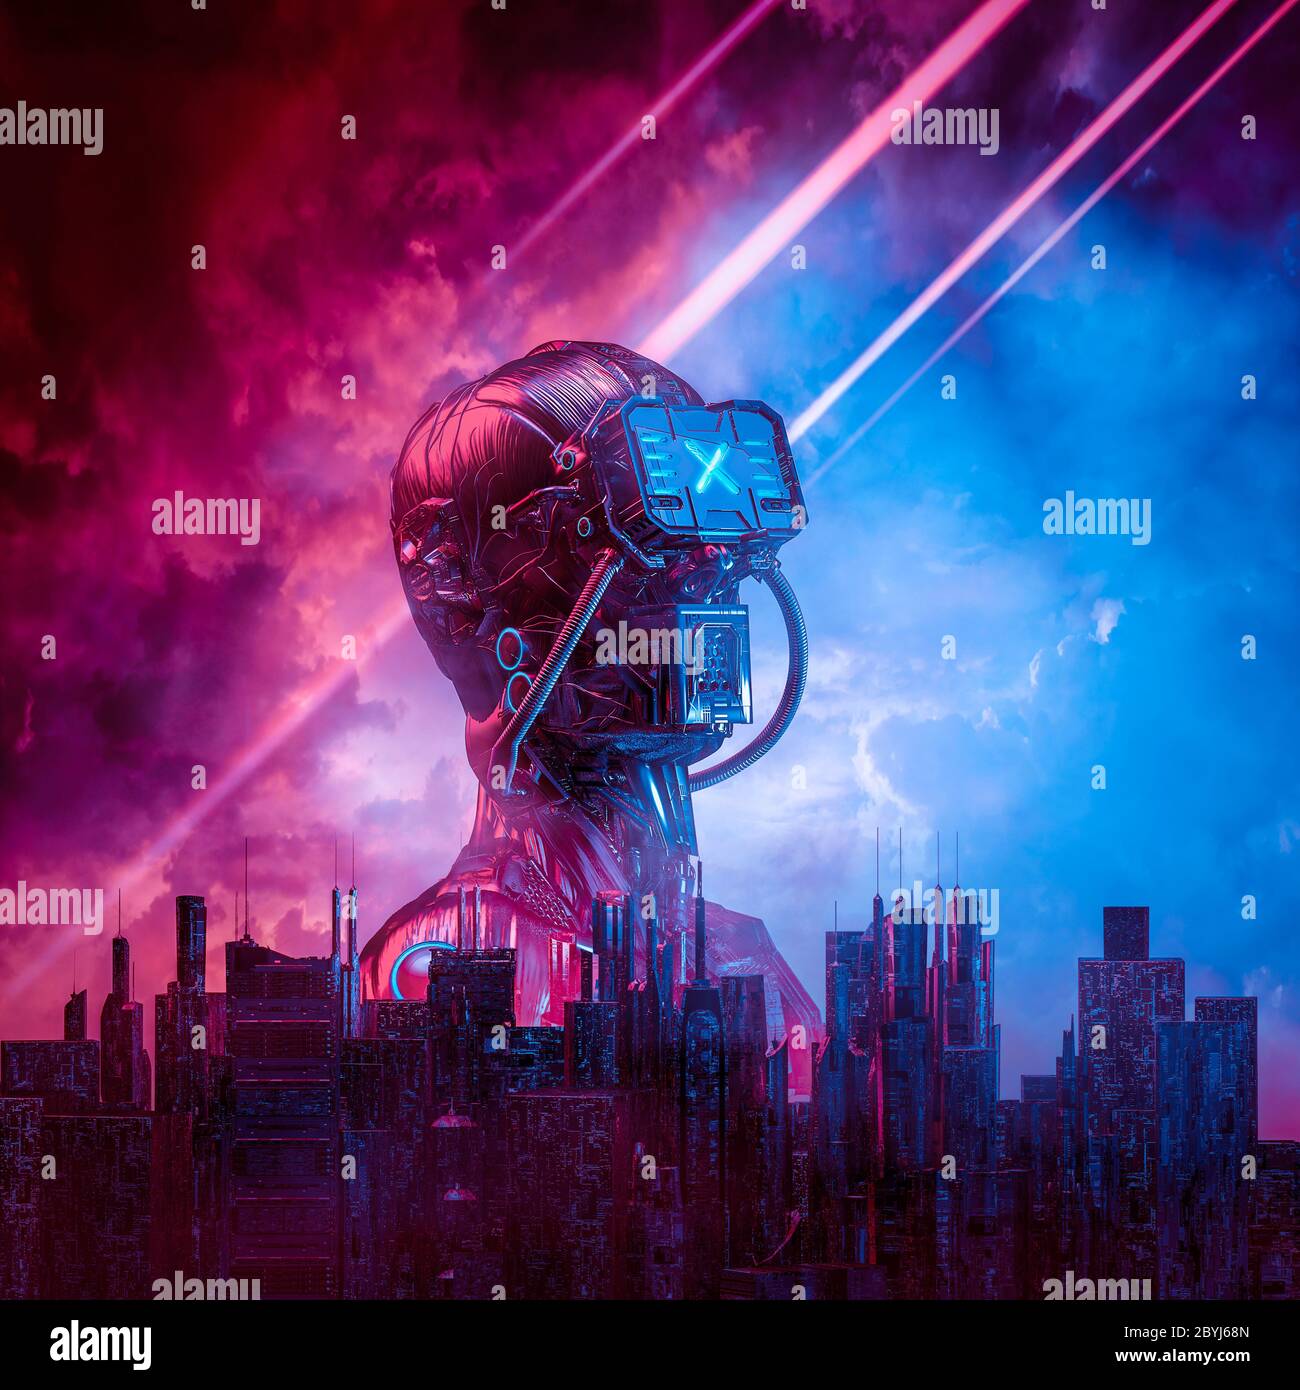 Android rojo amanecer / 3D ilustración de ciencia ficción hombre ciborg humanoide que se levanta detrás de la ciudad moderna contra el cielo ominoso Foto de stock